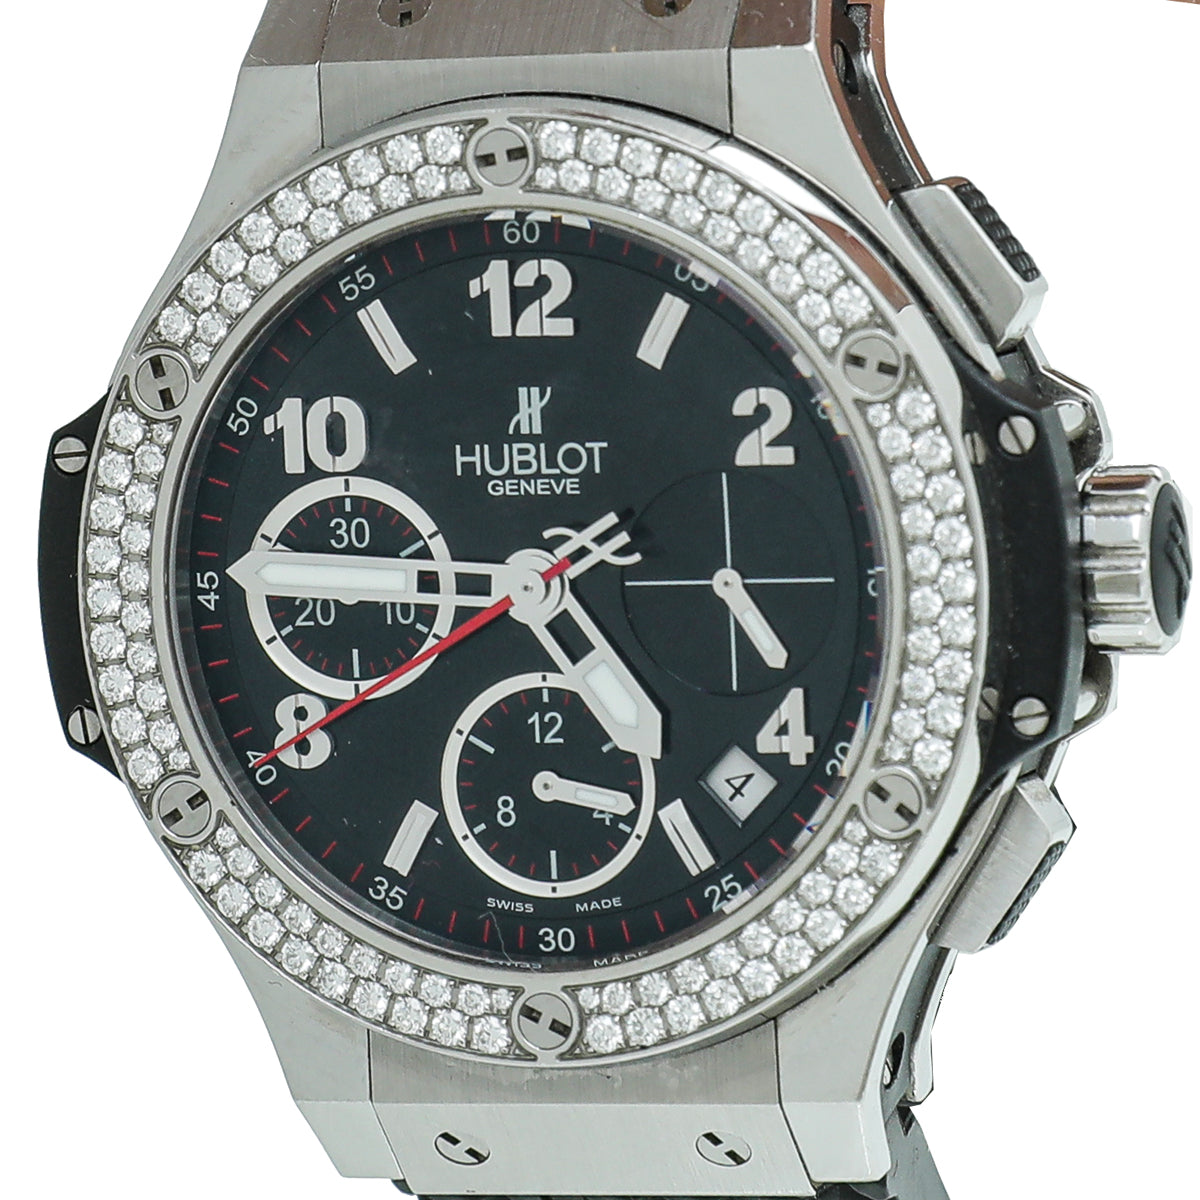 Hublot ST.ST Diamond Big Bang 41 mm Watch